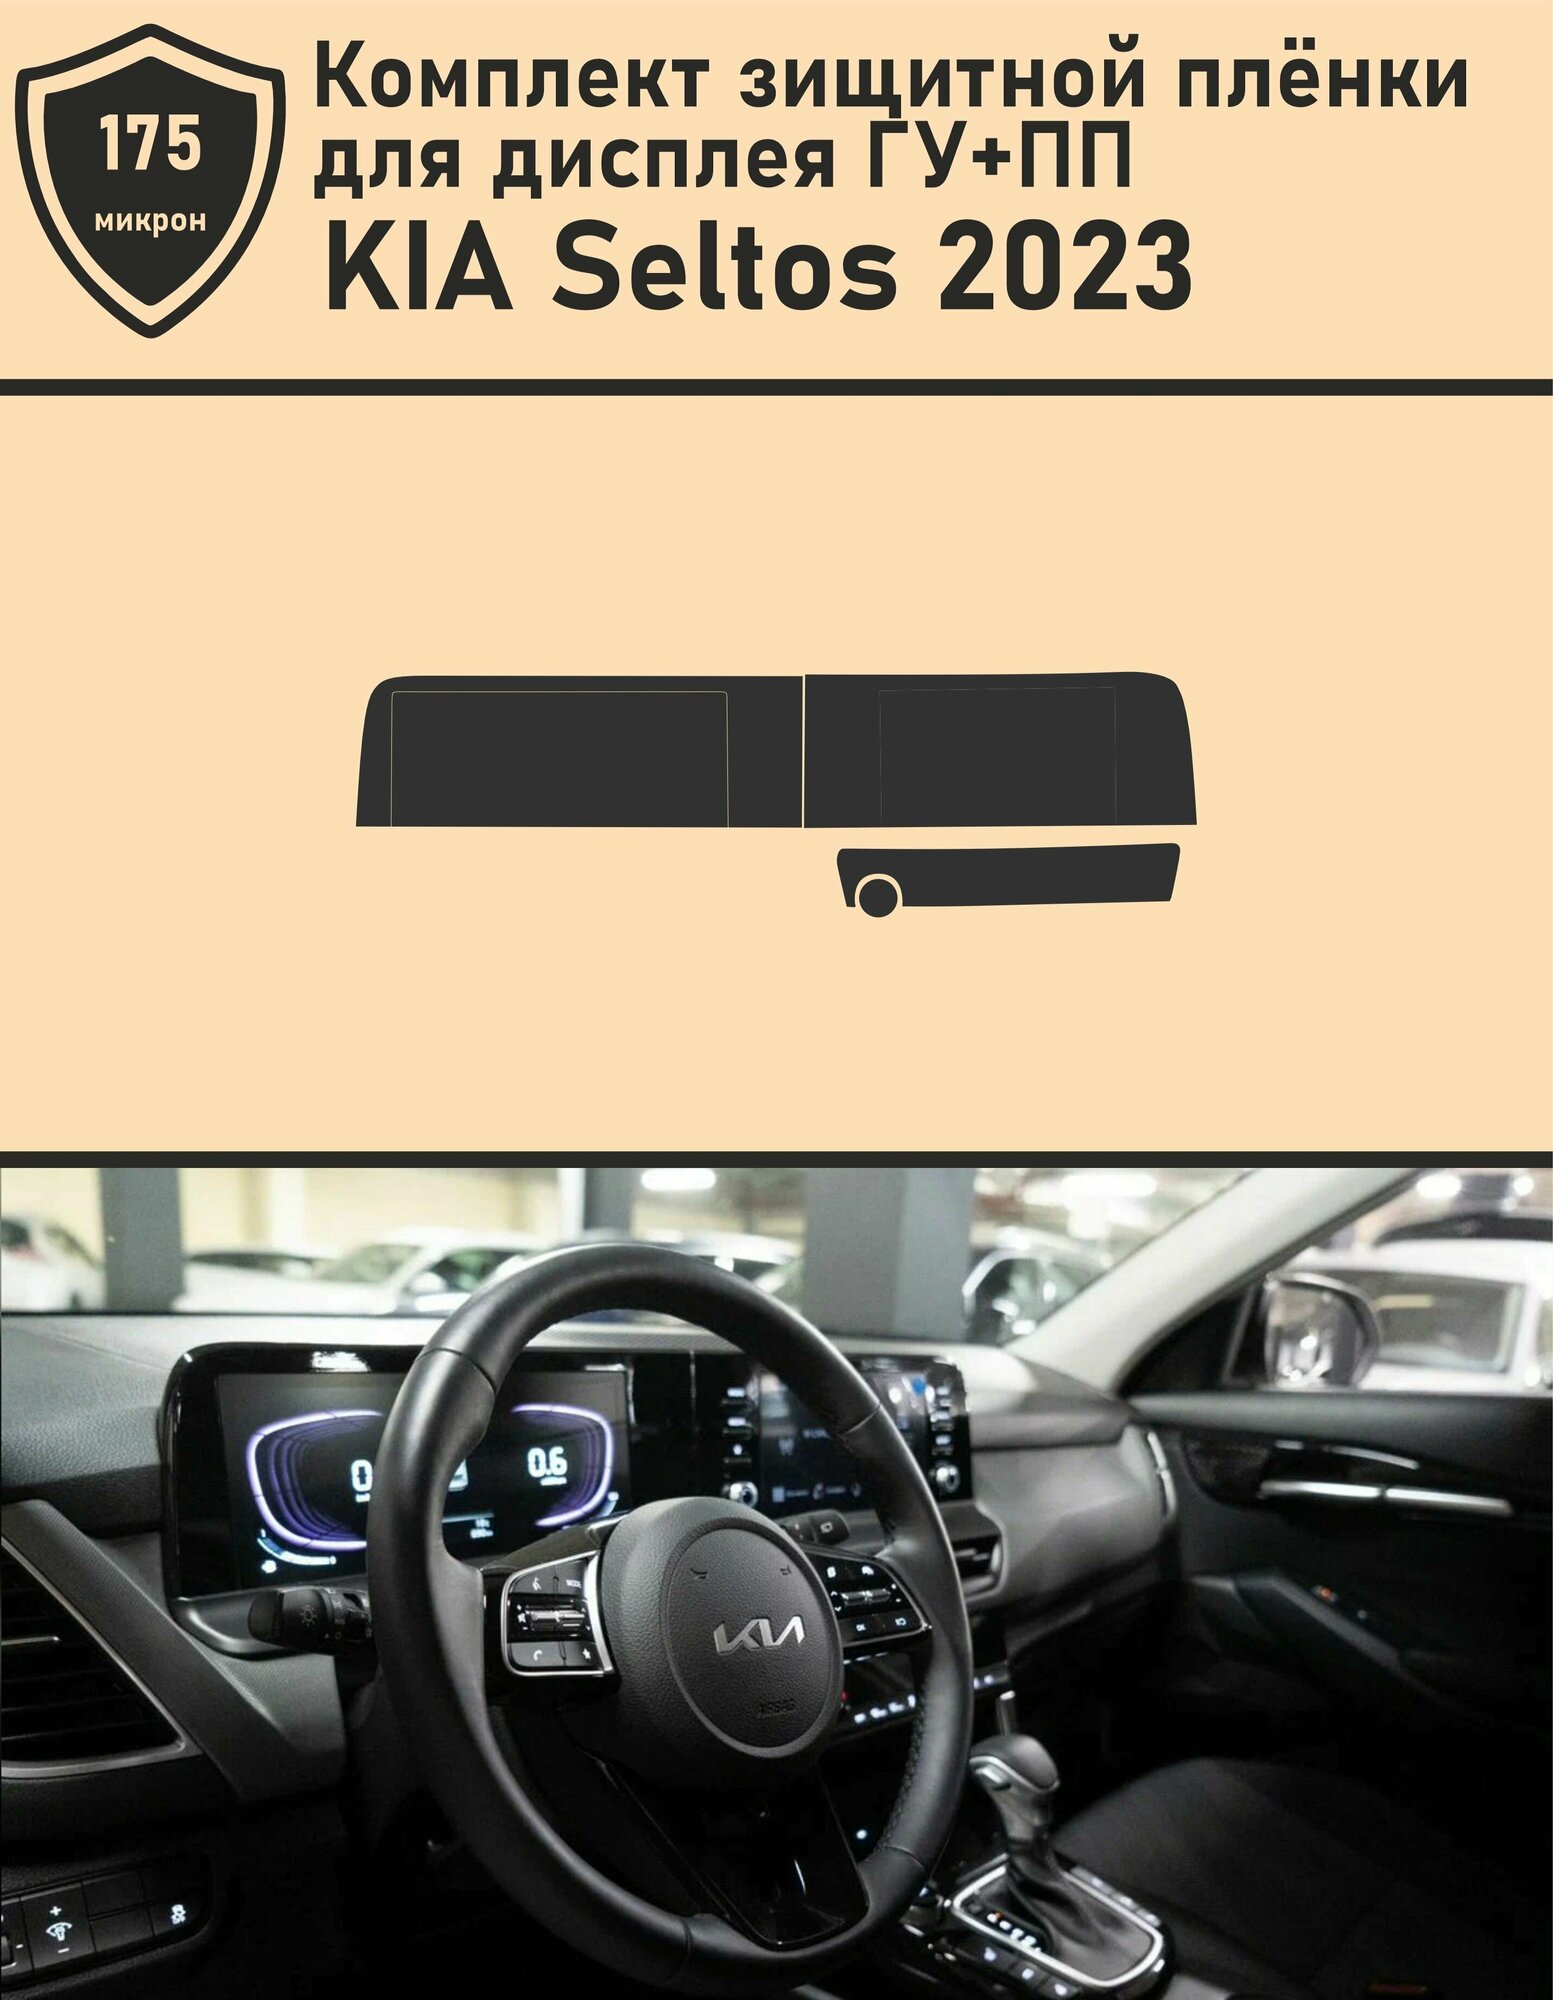 KIA Seltos 2023/Комплект защитной пленки для дисплея ГУ + ПП